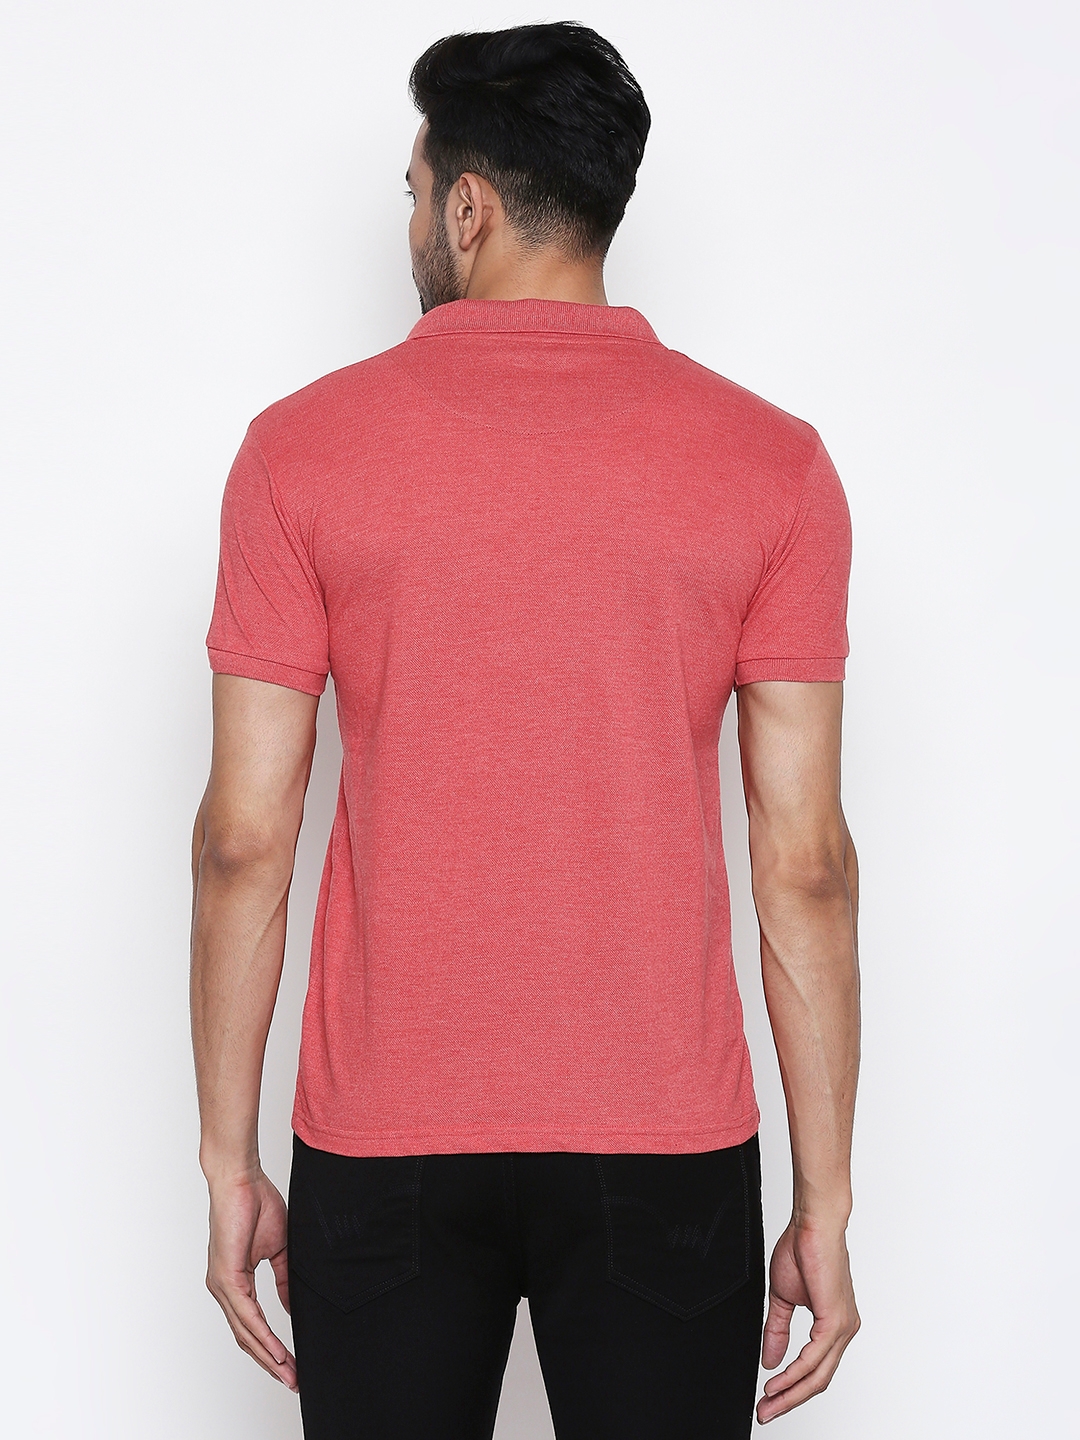 Integriti | Integriti Red Slim Fit Men's T-Shirts 5